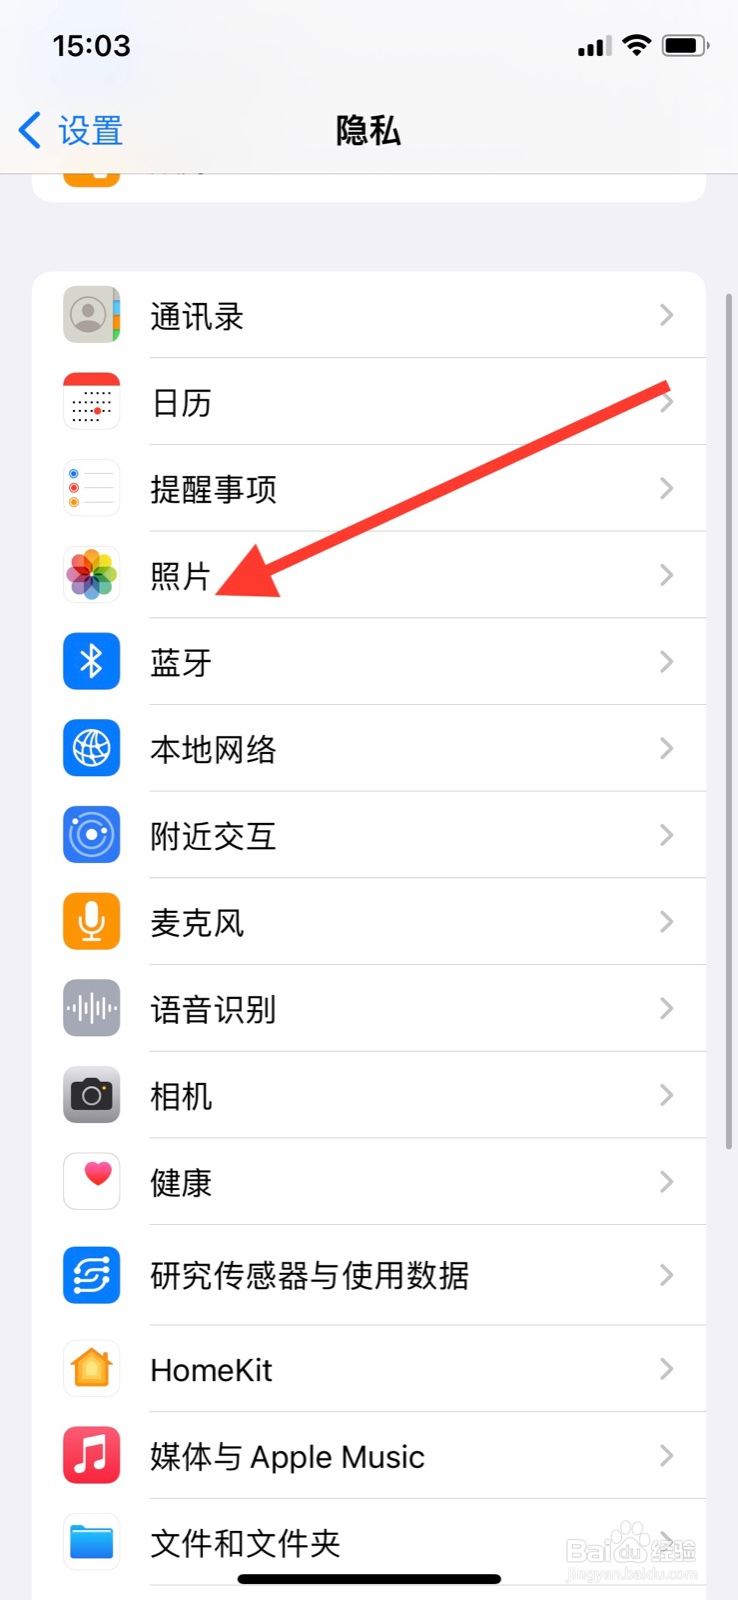 <b>iPhone准许“京喜”app访问系统全部照片</b>